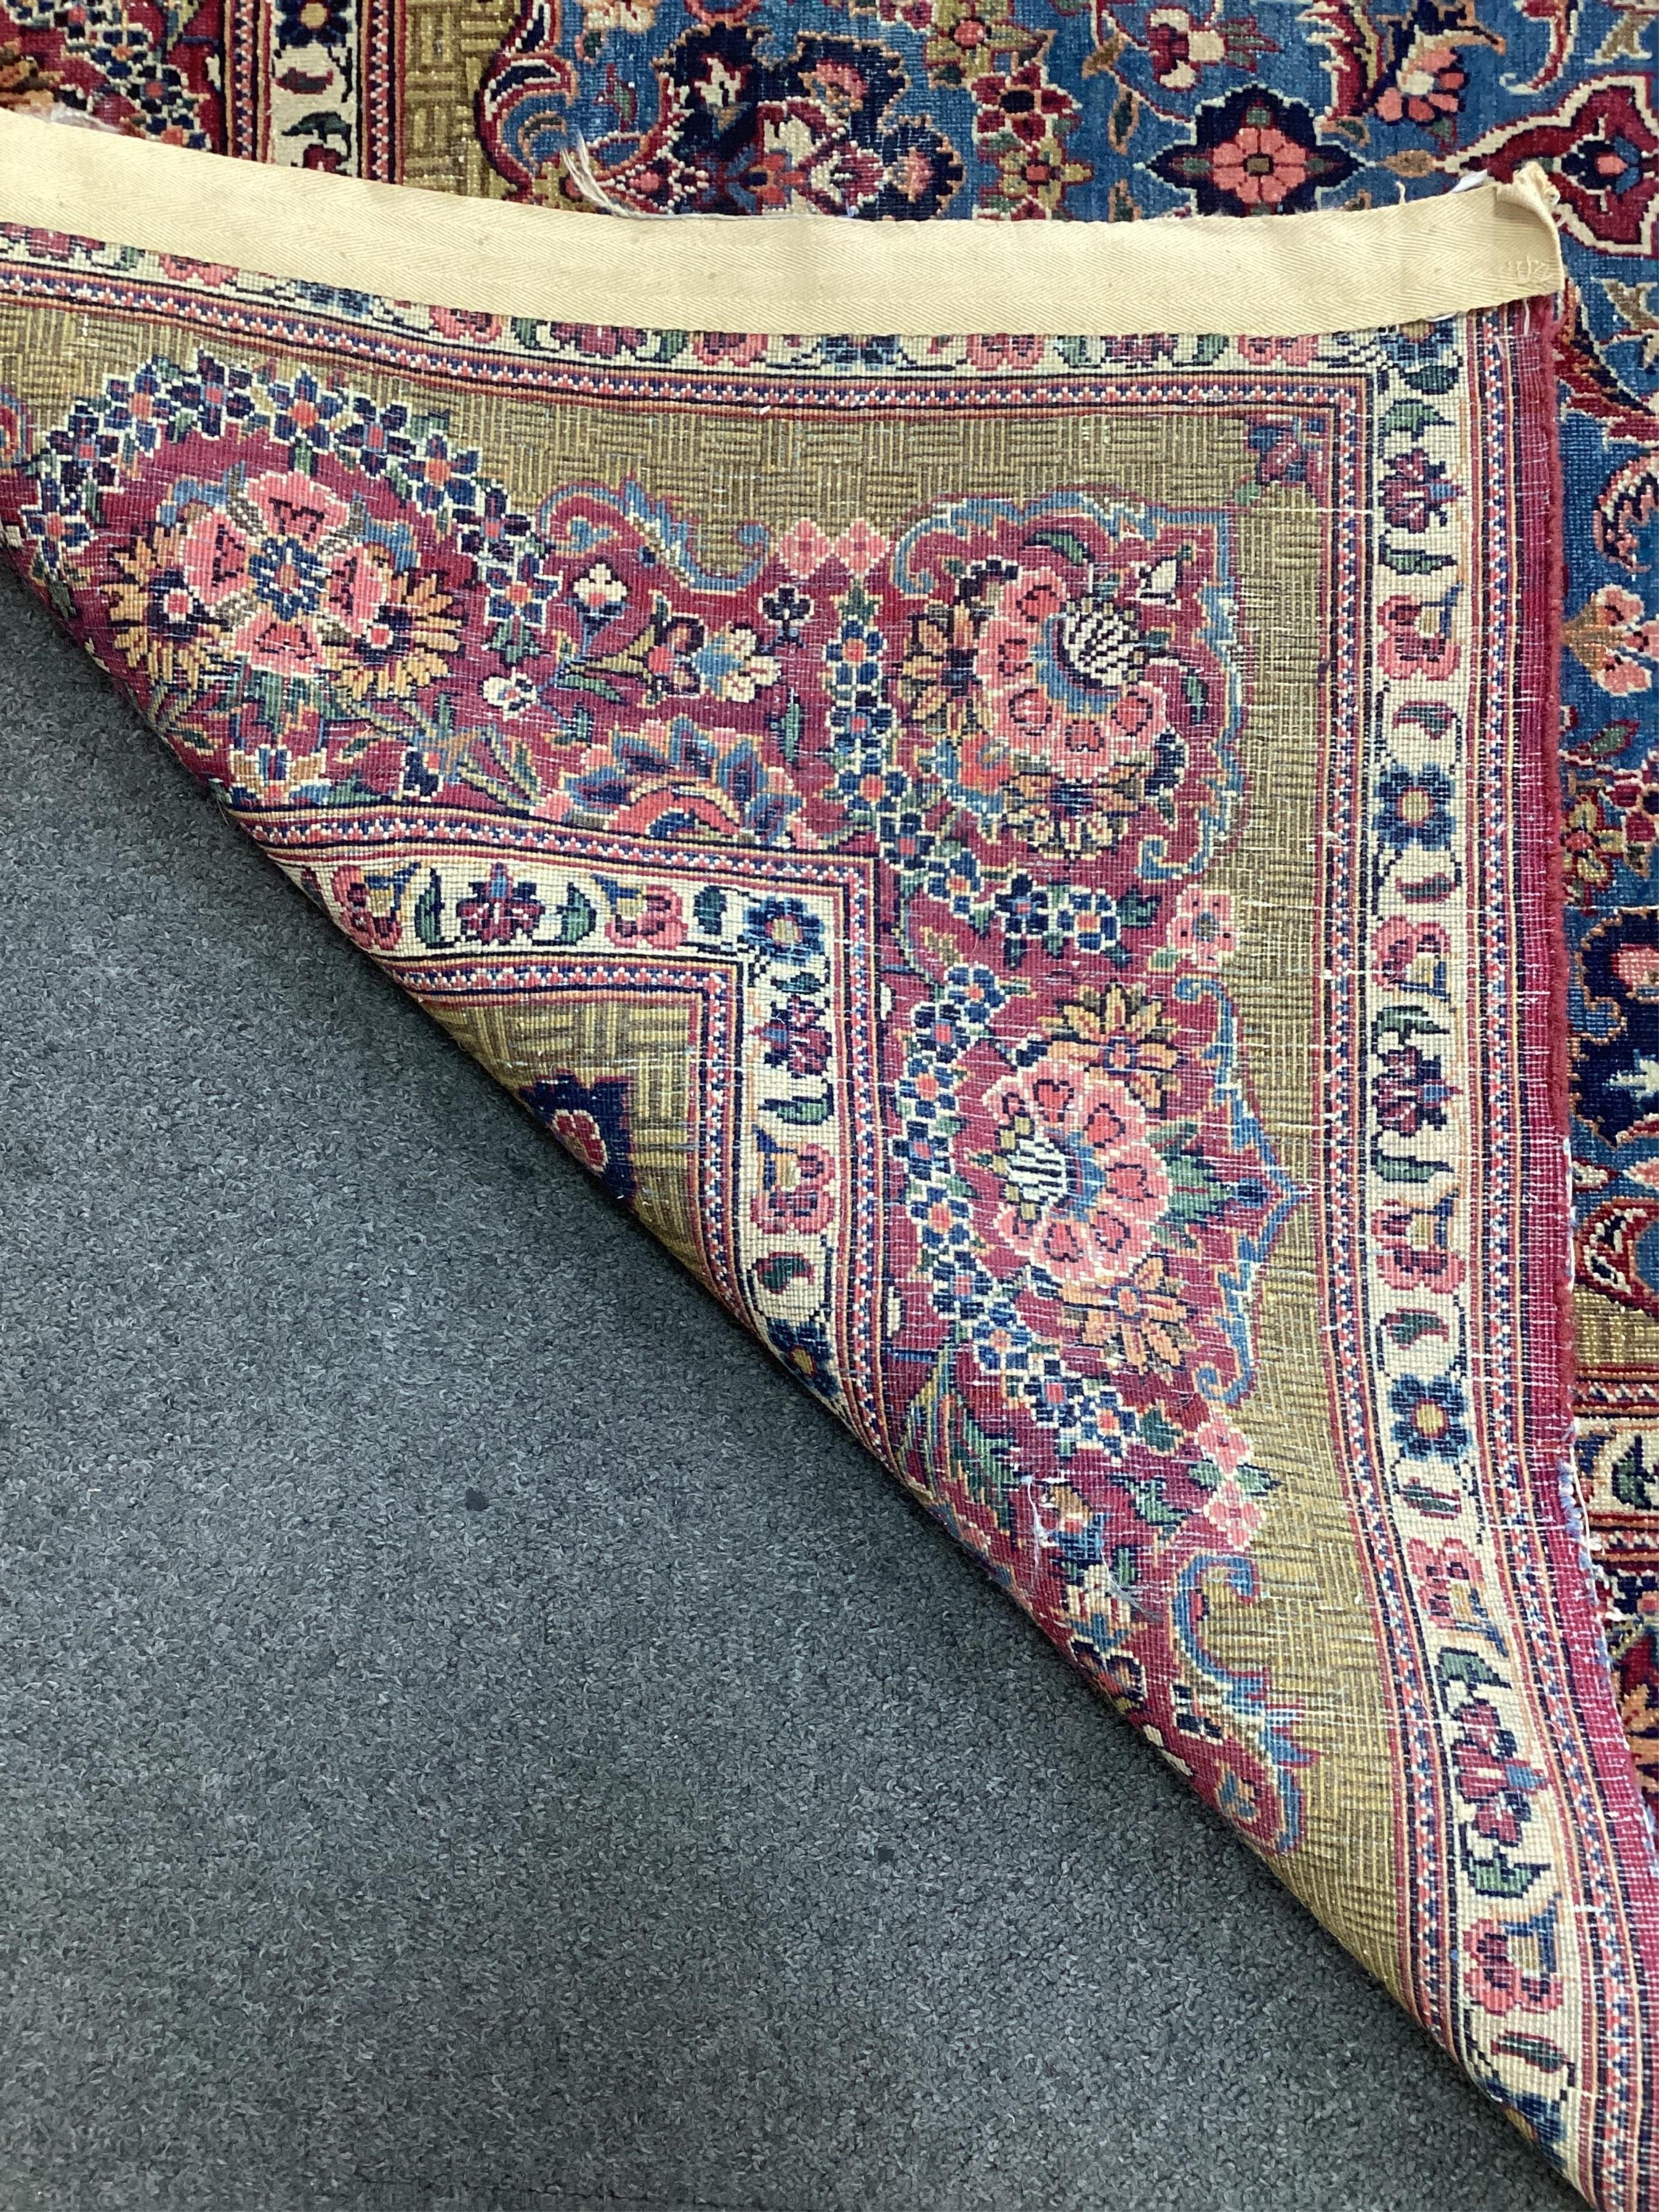 A Kashan blue ground rug, 214 x 128cm. Condition - fair